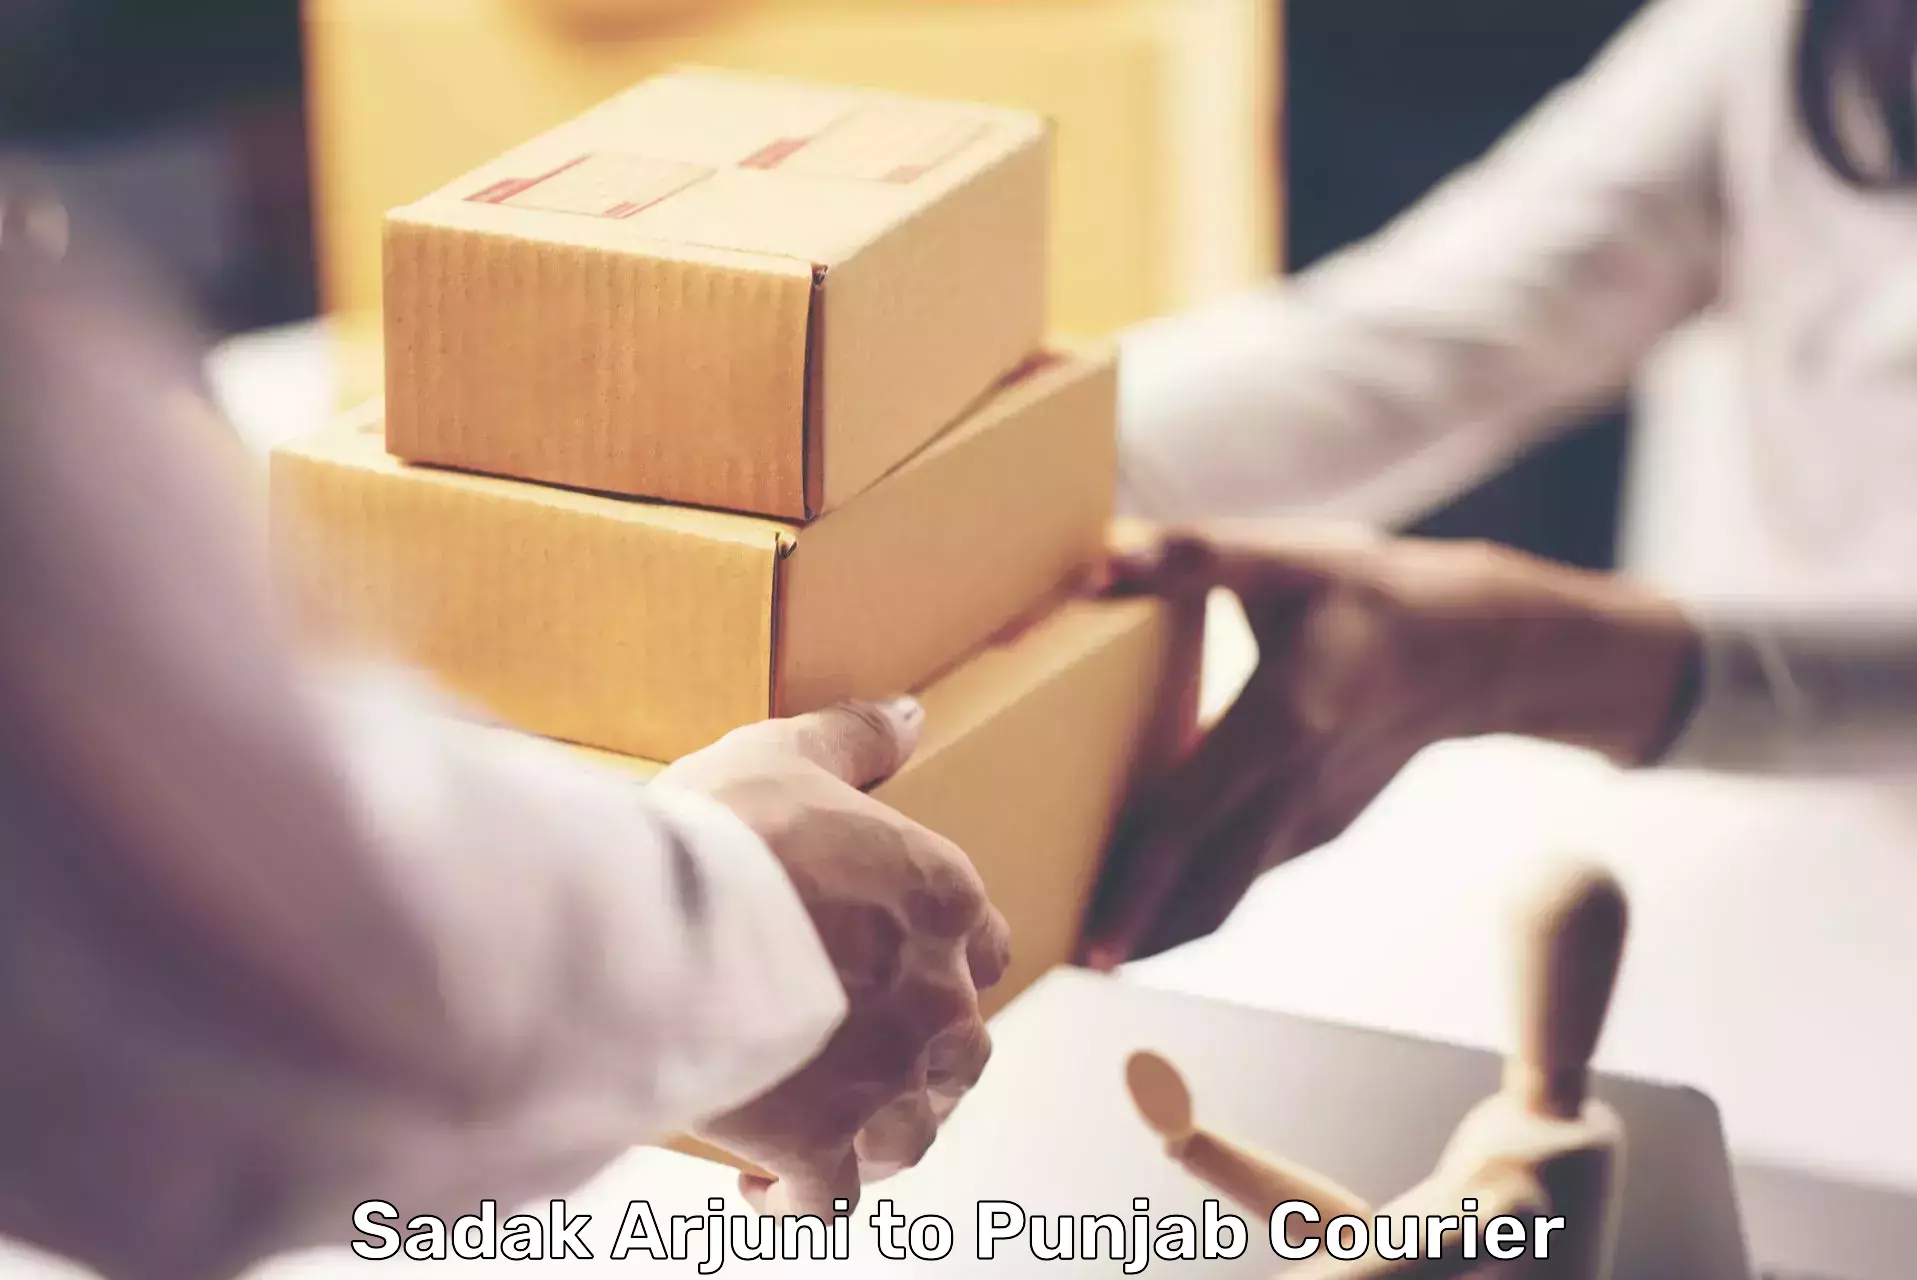 Fast-track shipping solutions Sadak Arjuni to Barnala